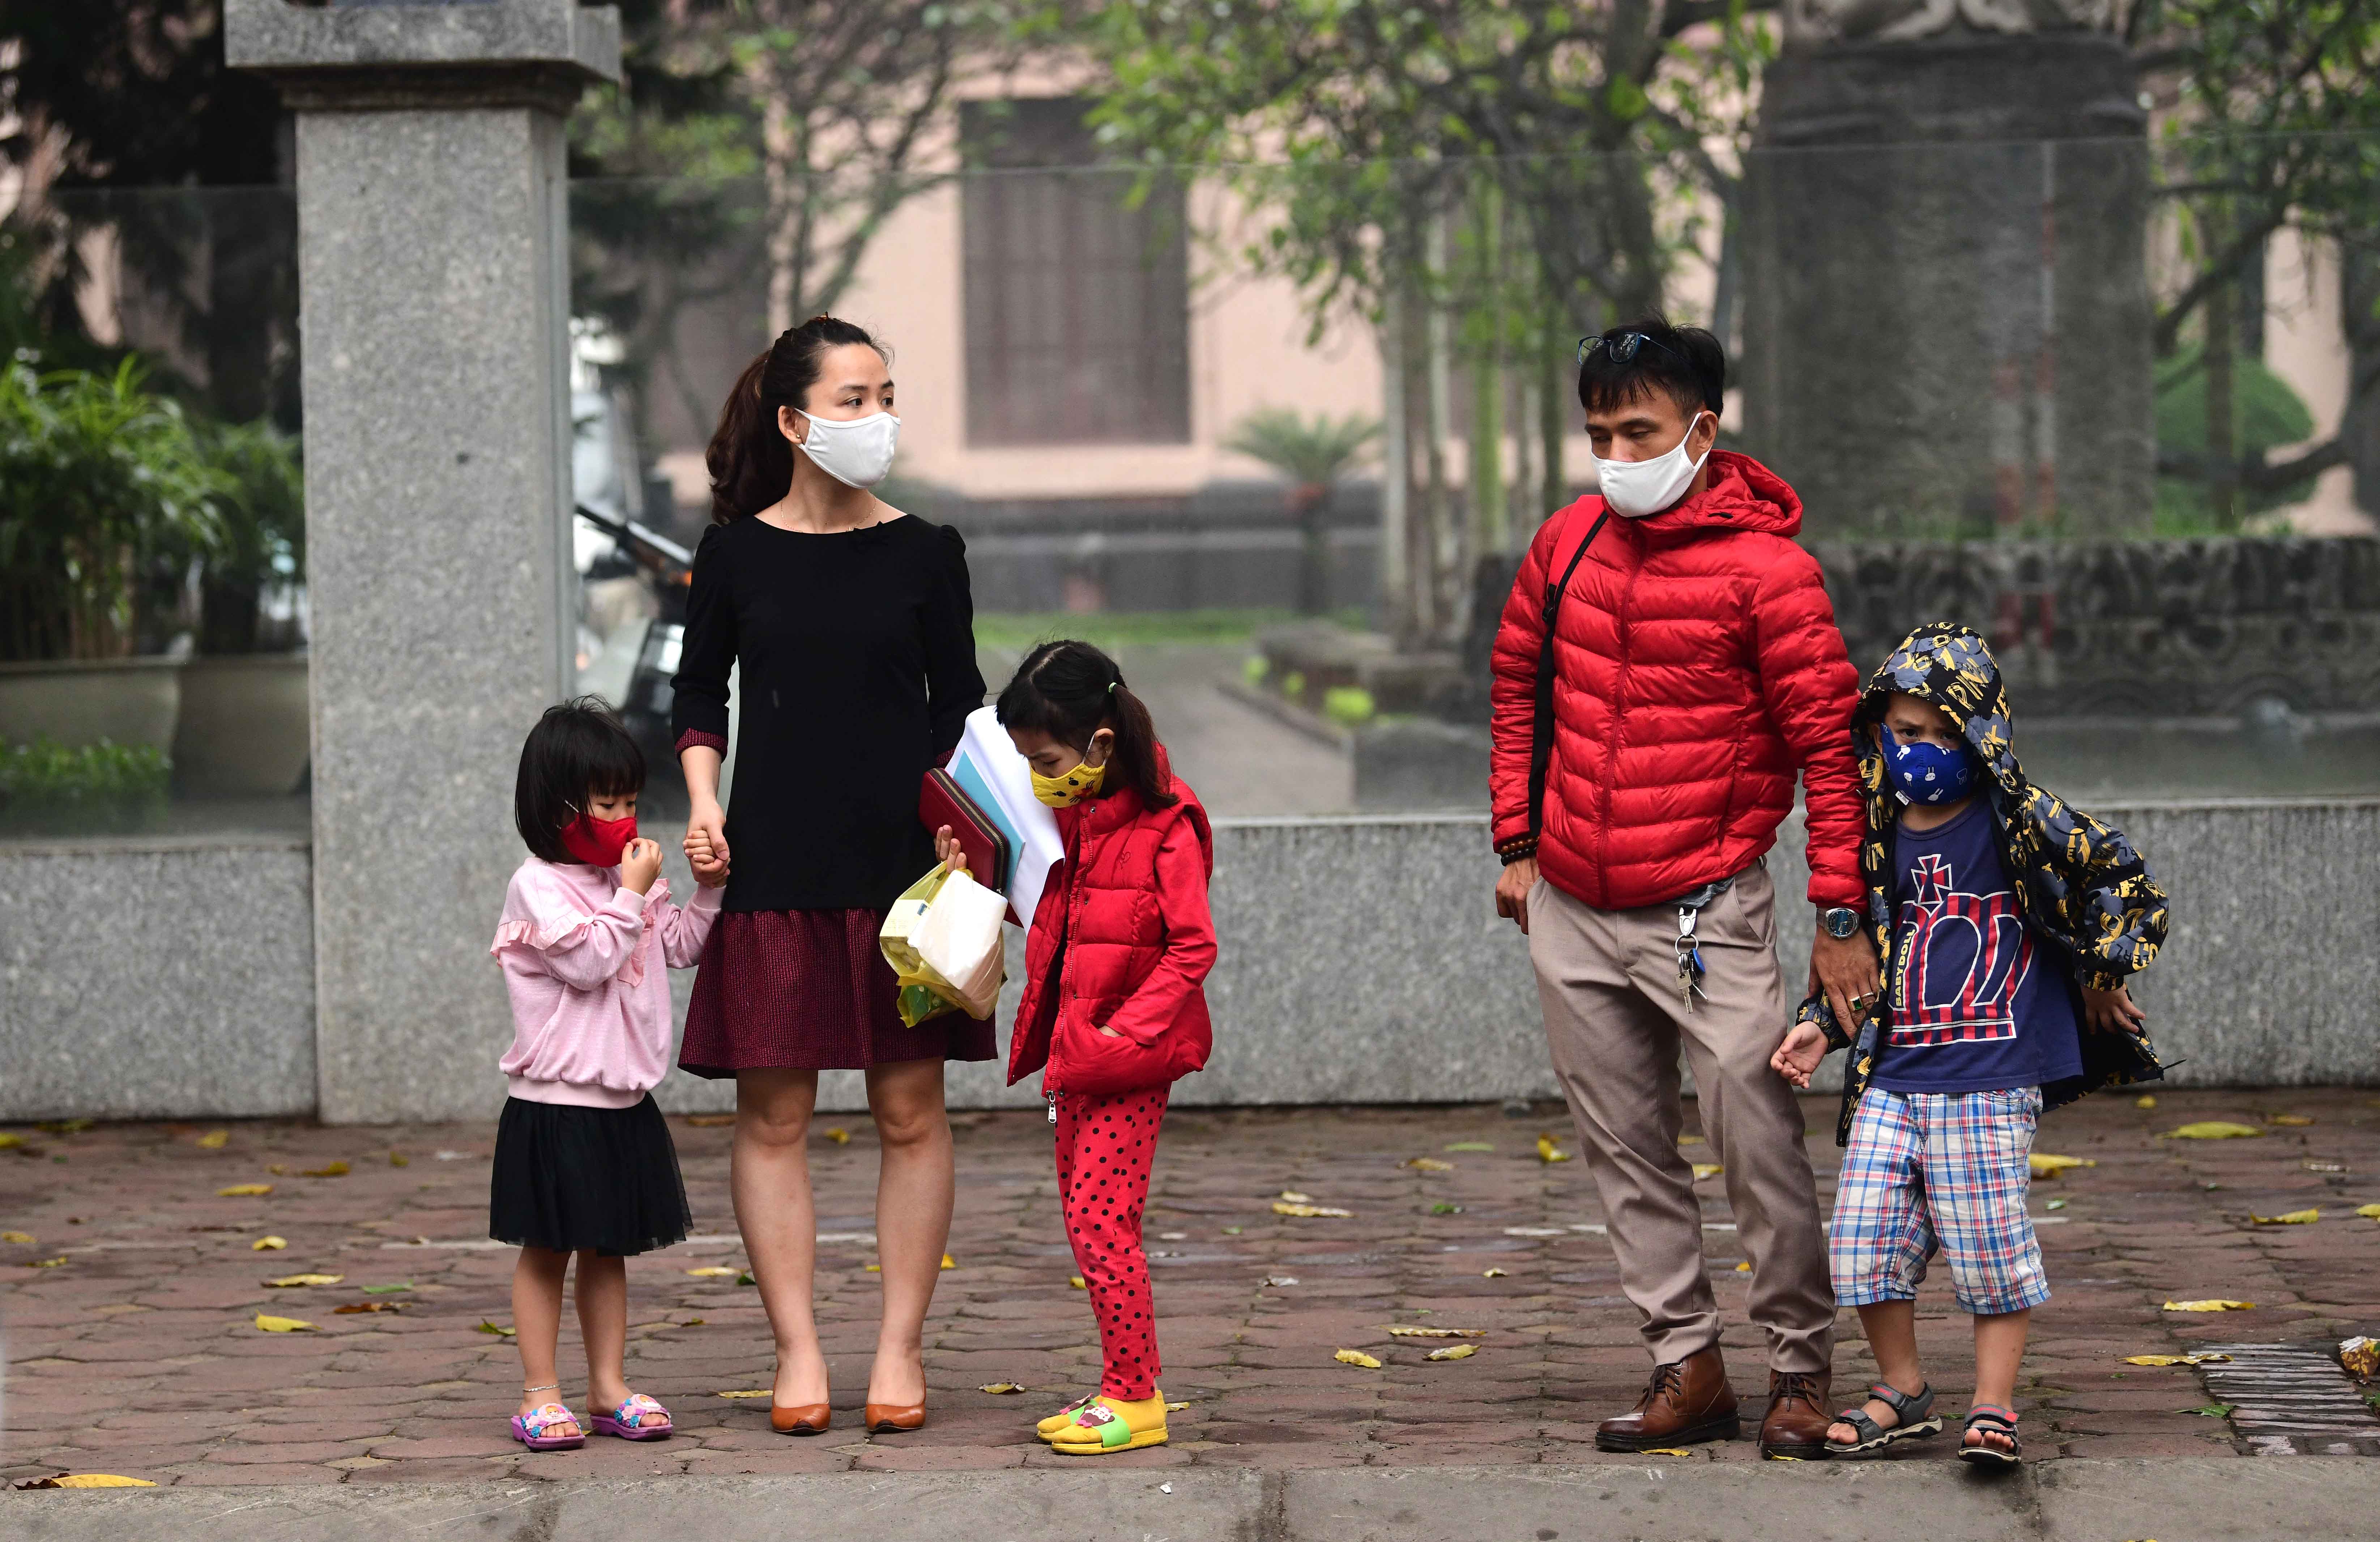 Ngày đầu thực hiện việc đeo khẩu trang nơi công cộng: Người Việt cẩn trọng, người nước ngoài thờ ơ - 1